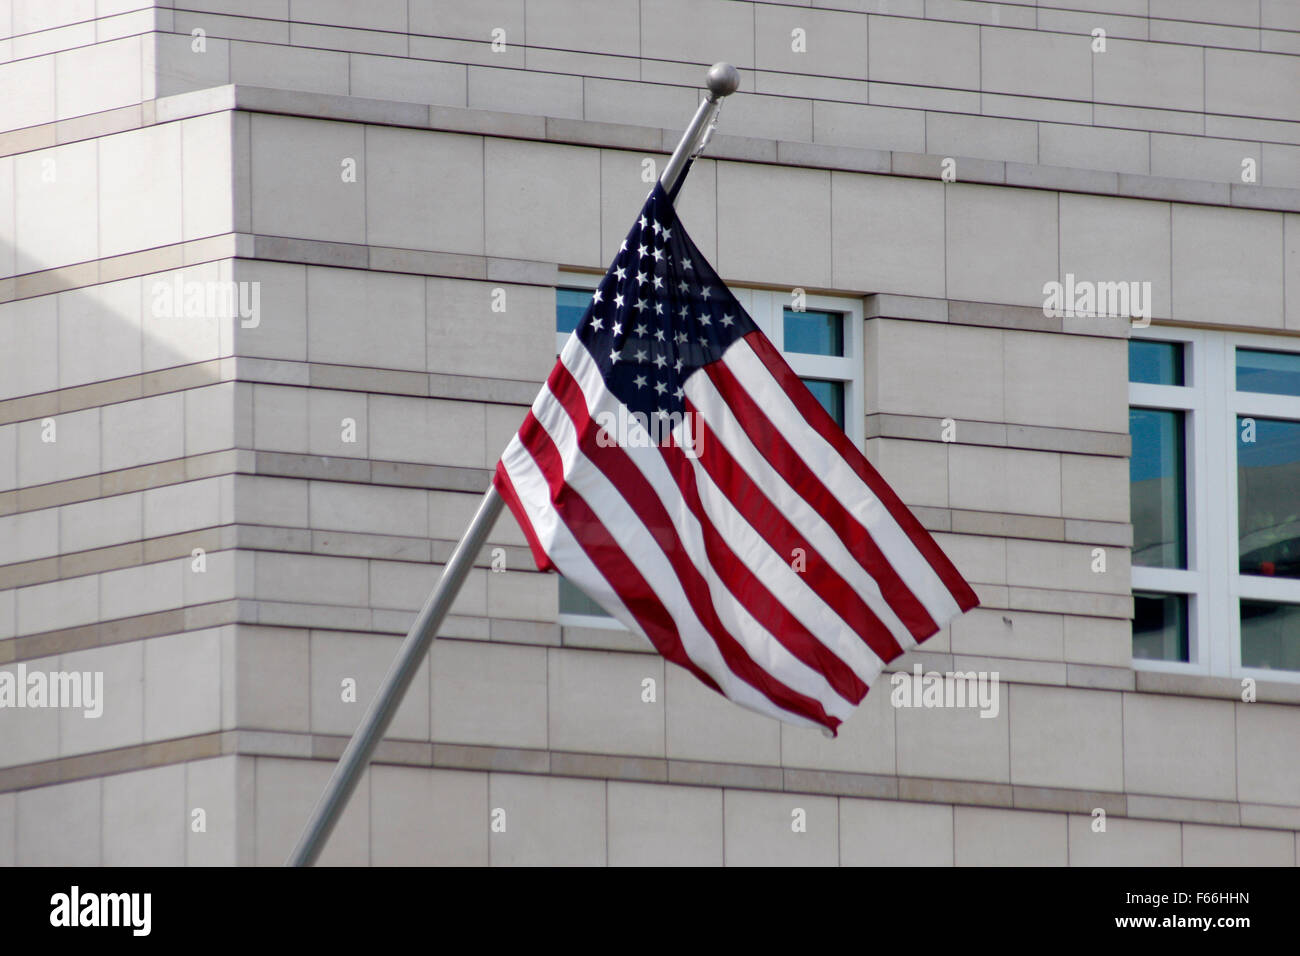 US-amerikanische Flagge vor der US-Botschaft am Pariser Platz, Berlin-Mitte. Stock Photo